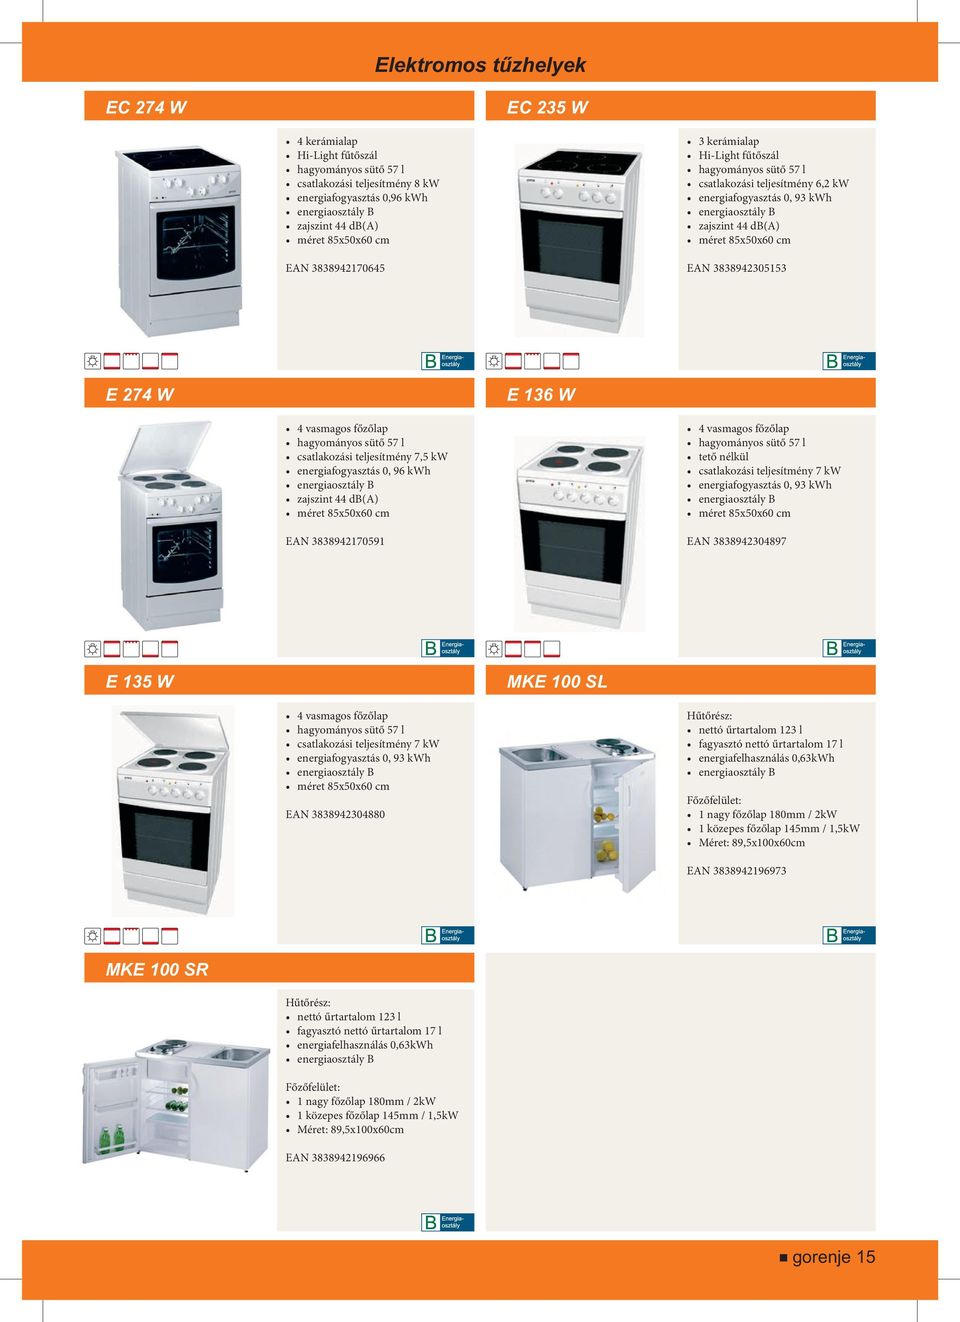 Hűtők, fagyasztószekrények 2-12 & Tűzhelyek & Mosógépek, szárítók  Beépíthető termékek 22-32,35. Páraelszívók PDF Free Download